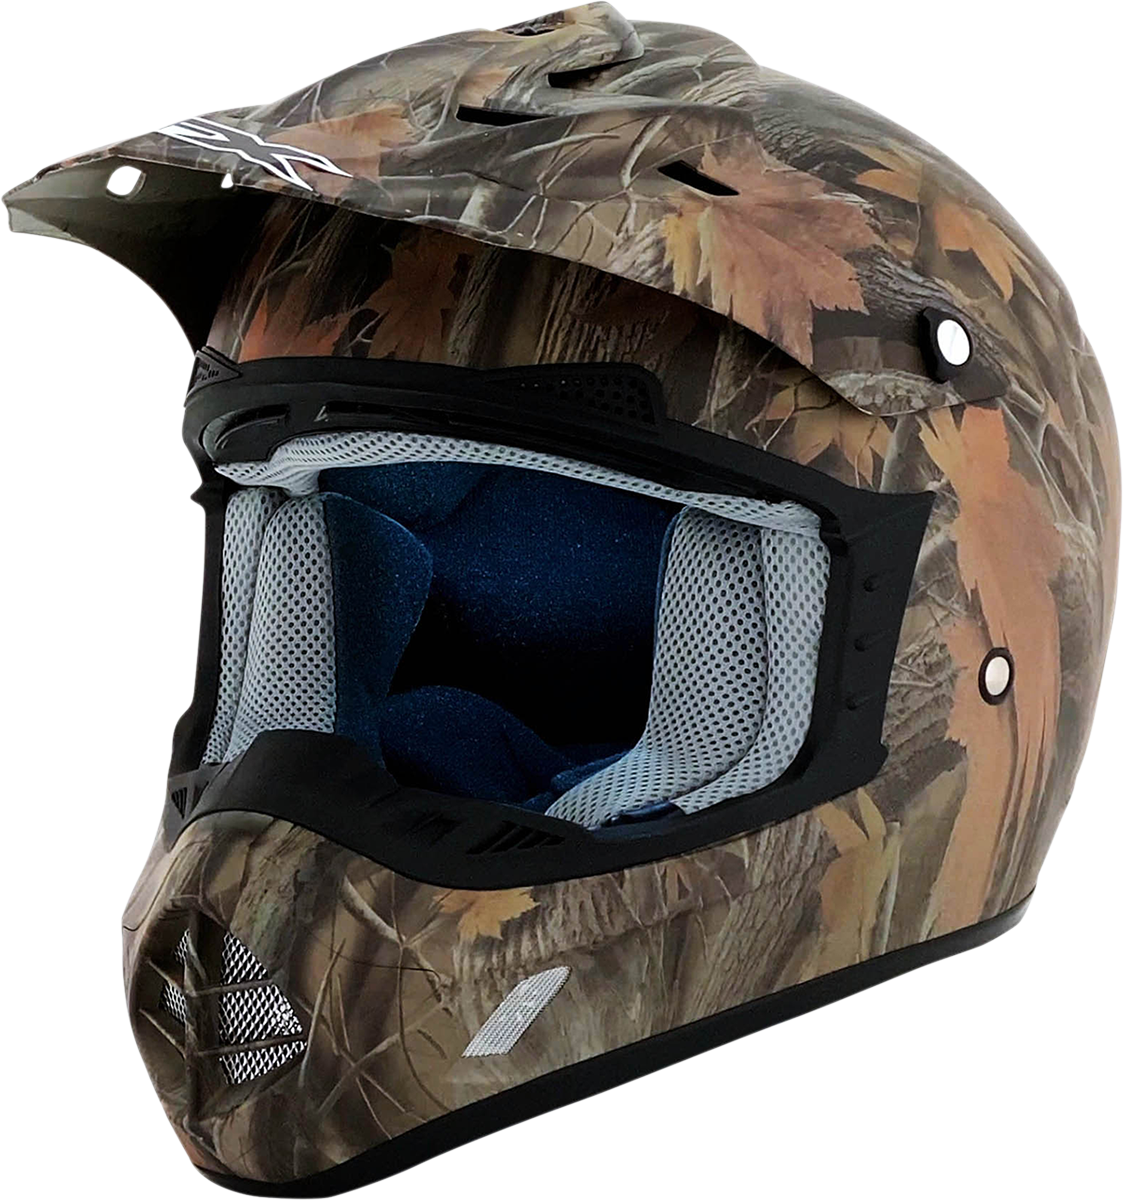 AFX FX-17 Helmet - Camo - 3XL 0110-2596